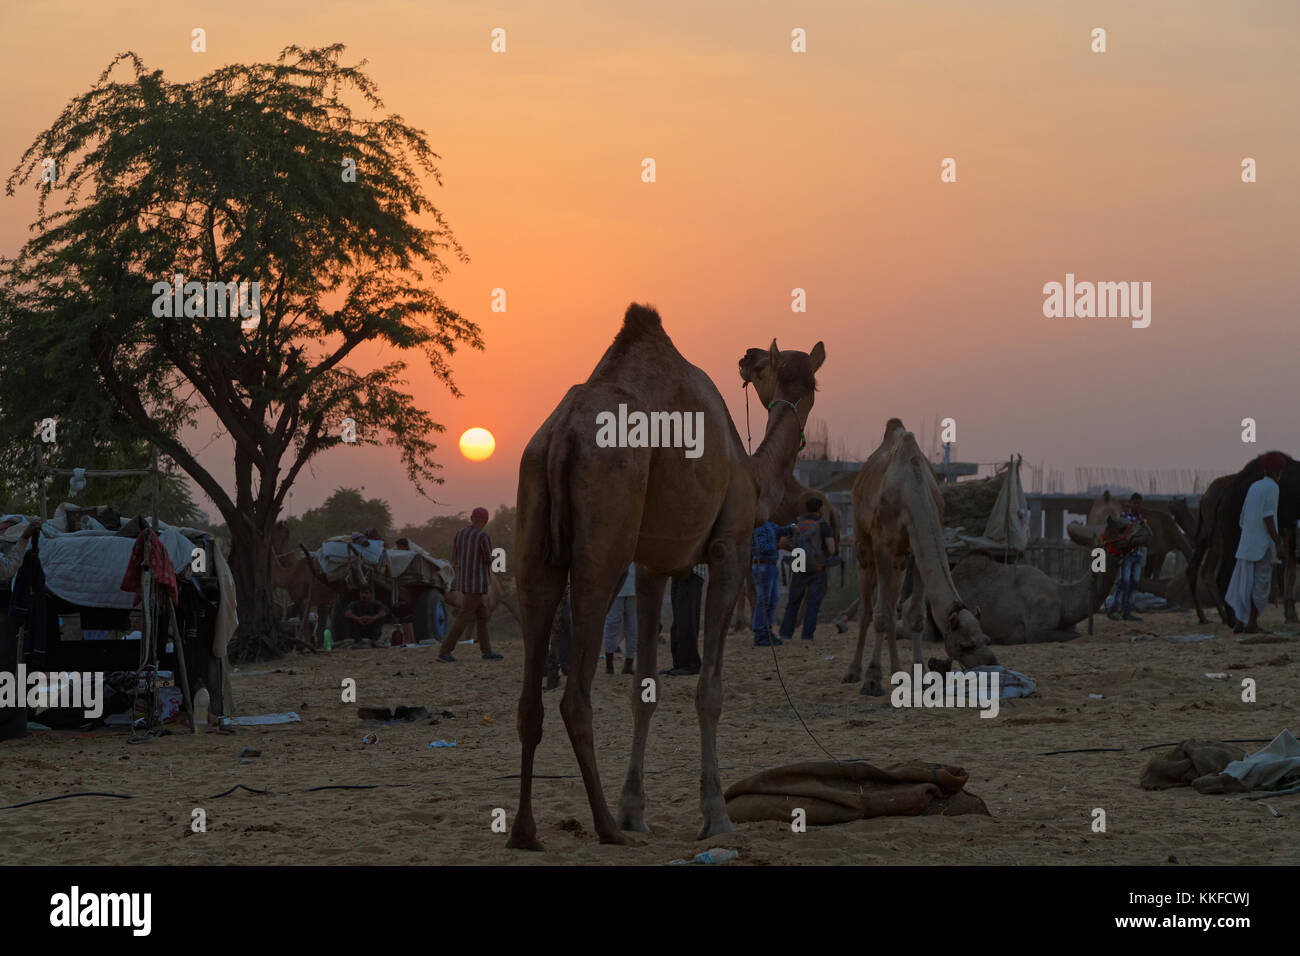 PUSHKAR, INDIA, 28 de octubre de 2017 : Atardecer en mercado de camellos. Feria de Pushkar es una de las mayores ferias de ganado en el país, con miles de camellos. Foto de stock